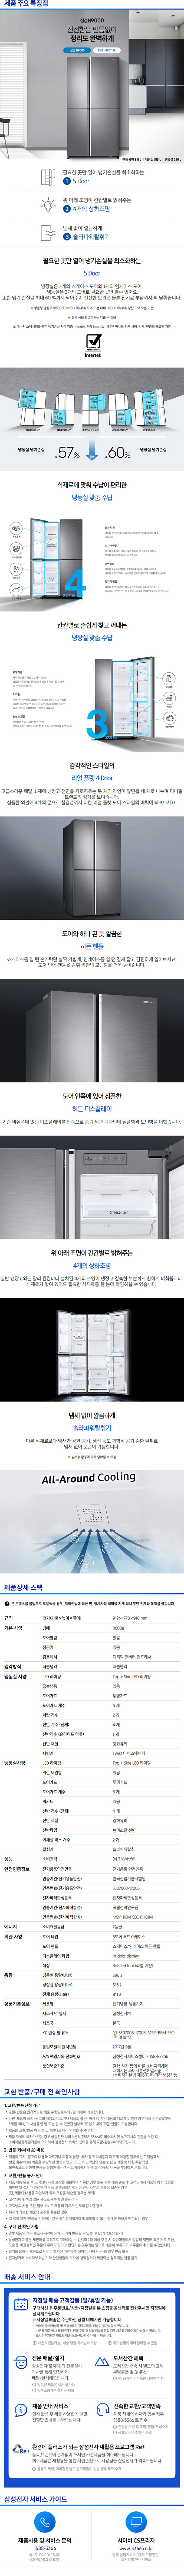 동서울케이블 - 삼성 지펠 양문냉장고 (RH81M8011S9) 상세보기